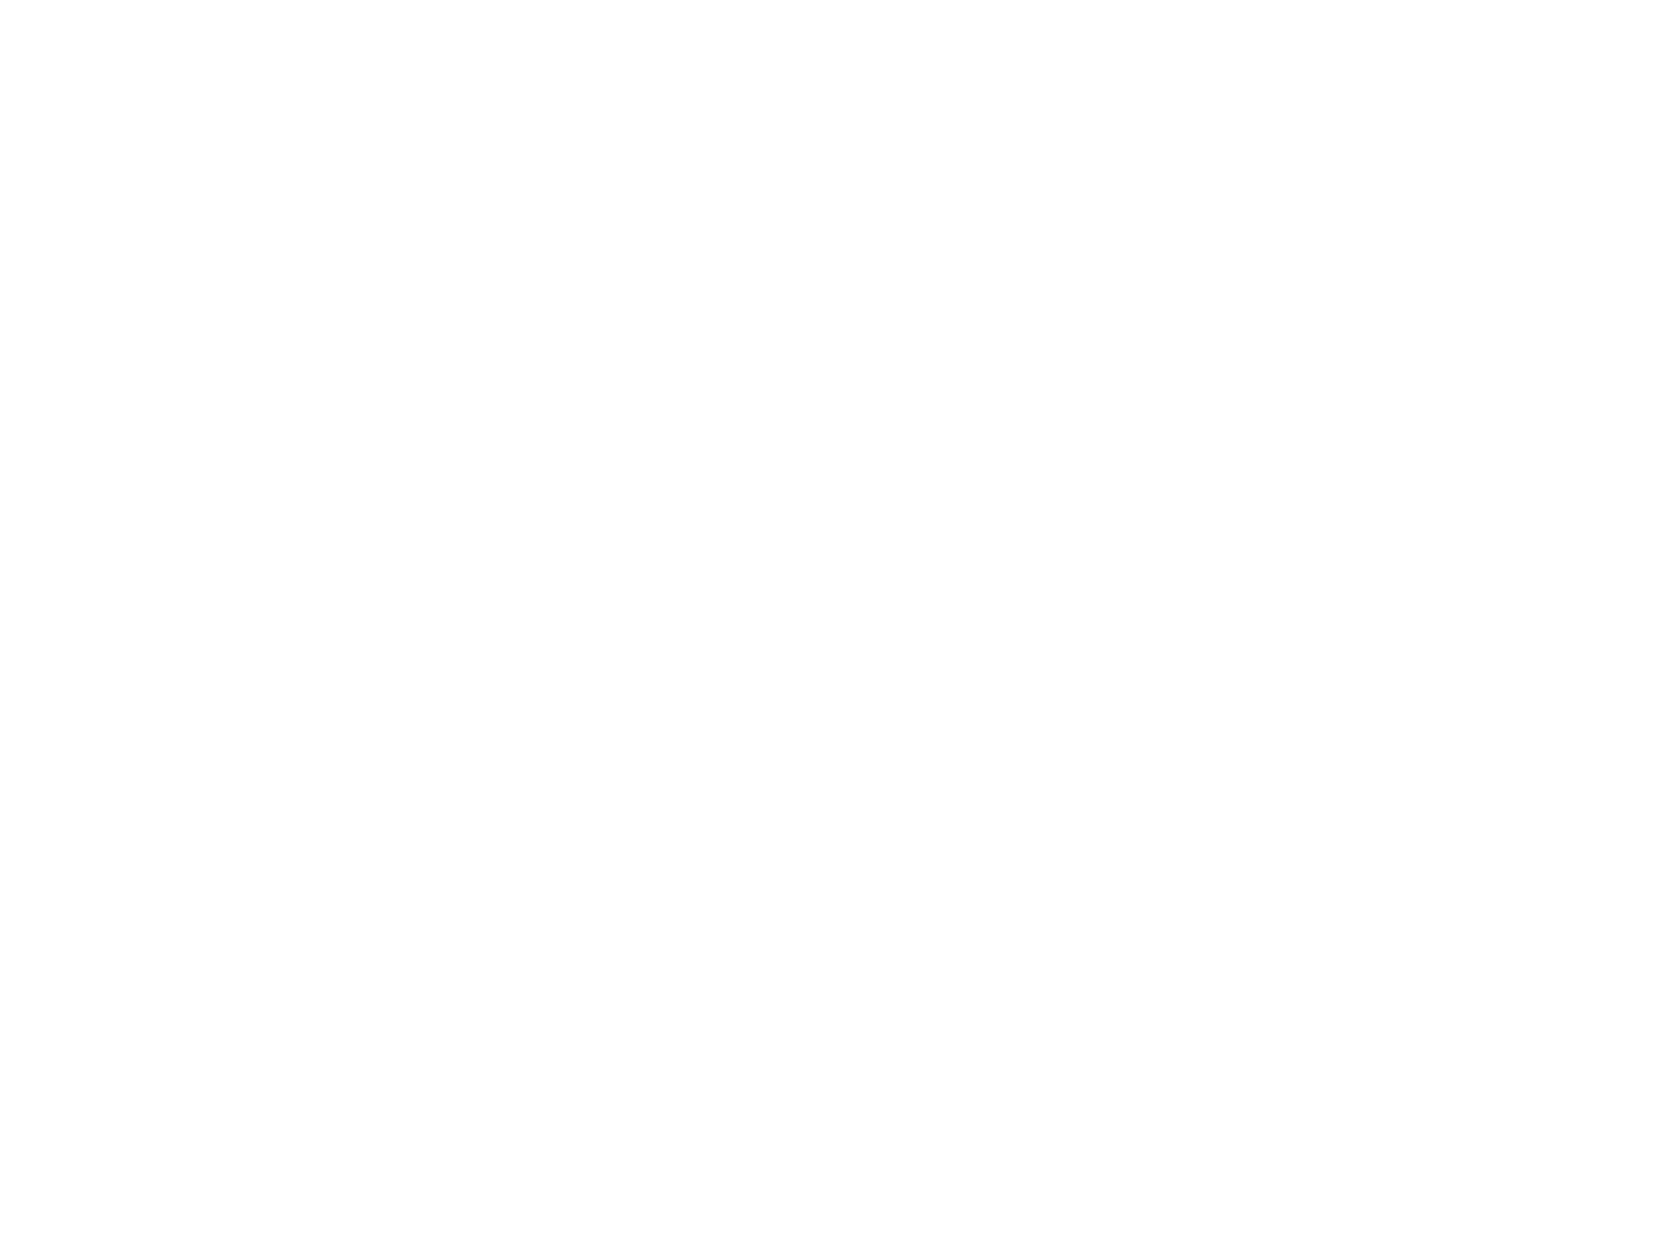 Дизайн Логотипа и бланка для школы музыки Ми Минор